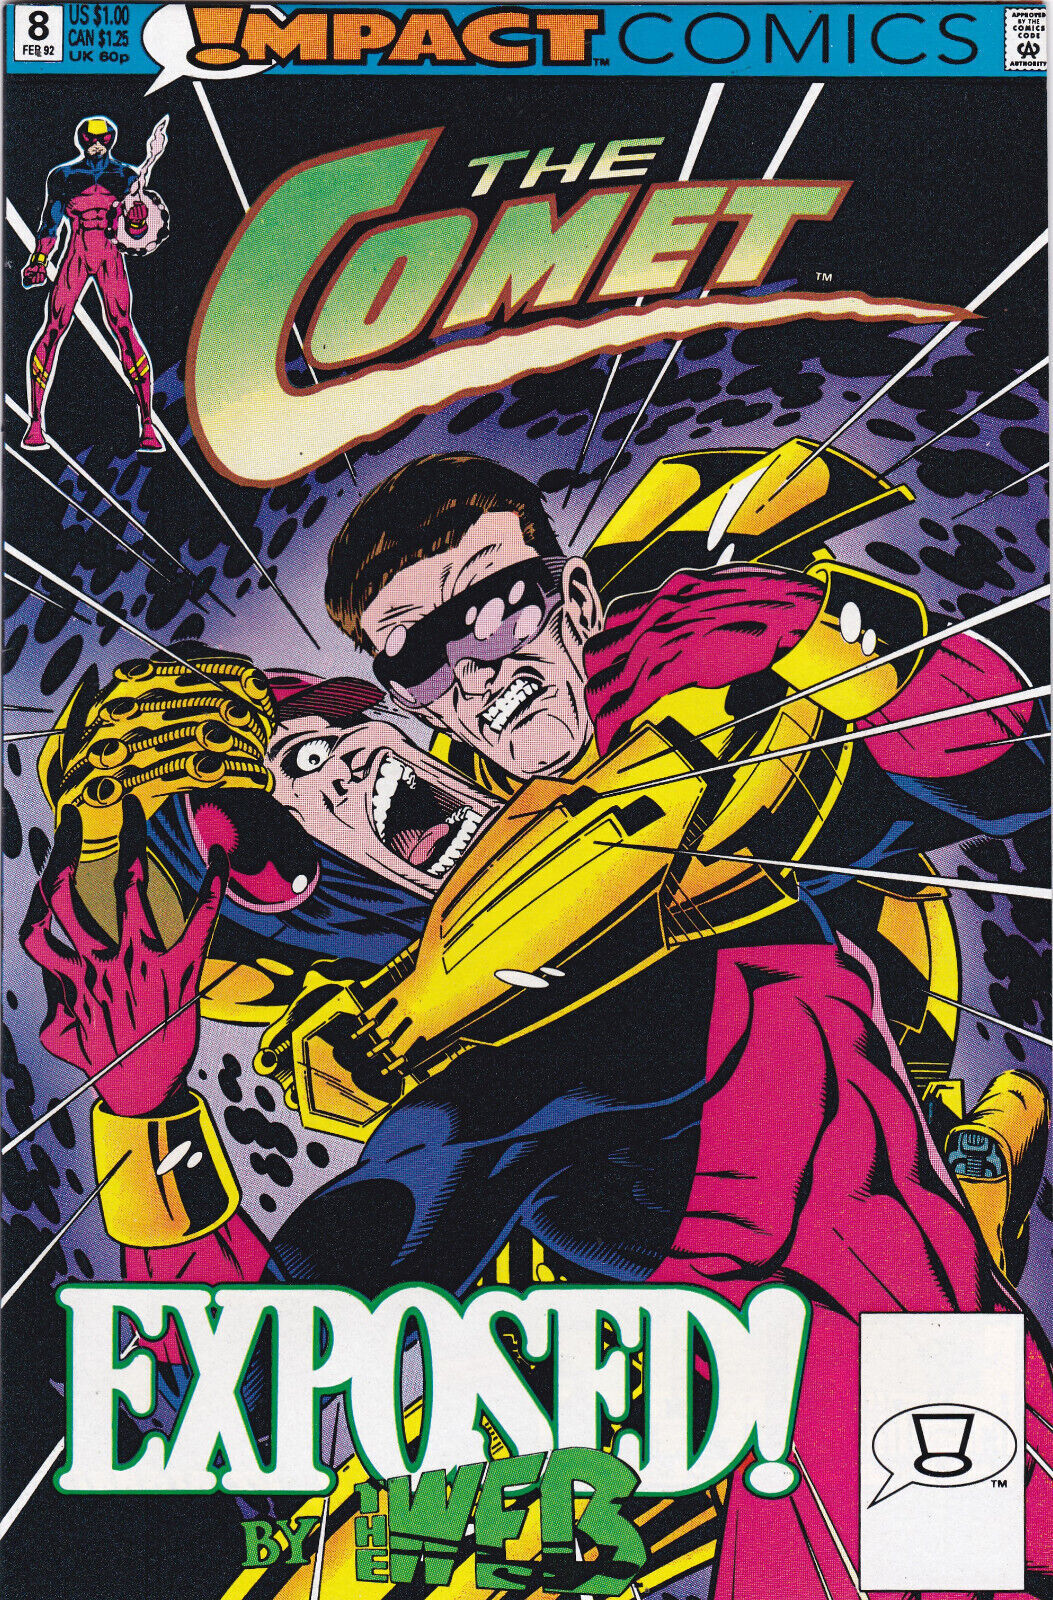 The Comet #8  Vol. 2 (1991-1992) Impact Comics Imprint of DC Comics,High Grade